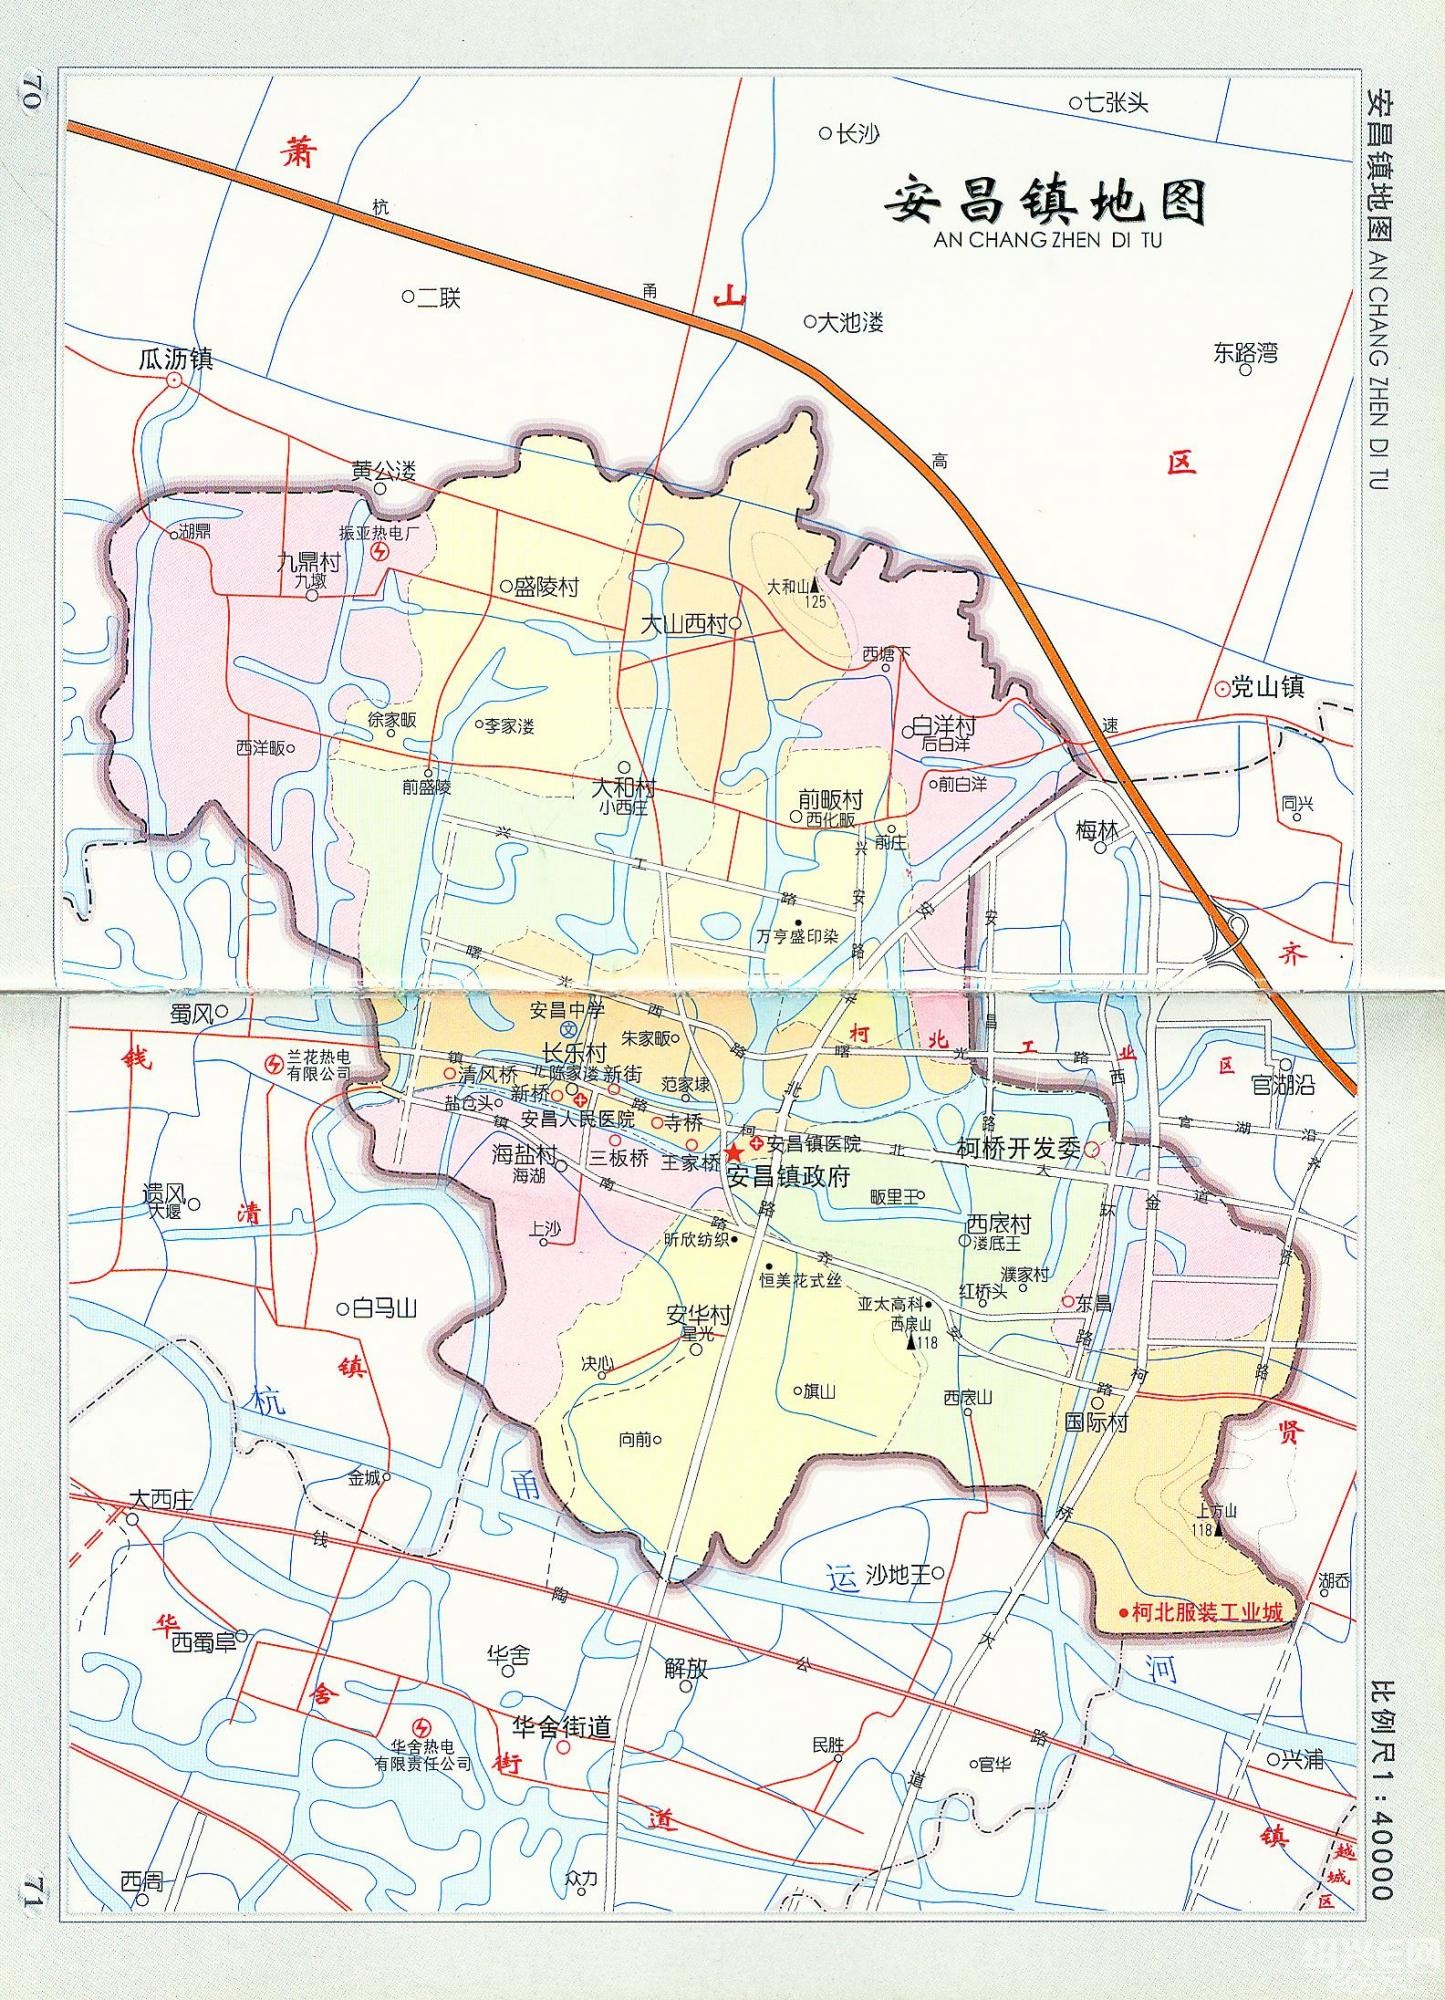 柯桥城区组成的镇街域地图